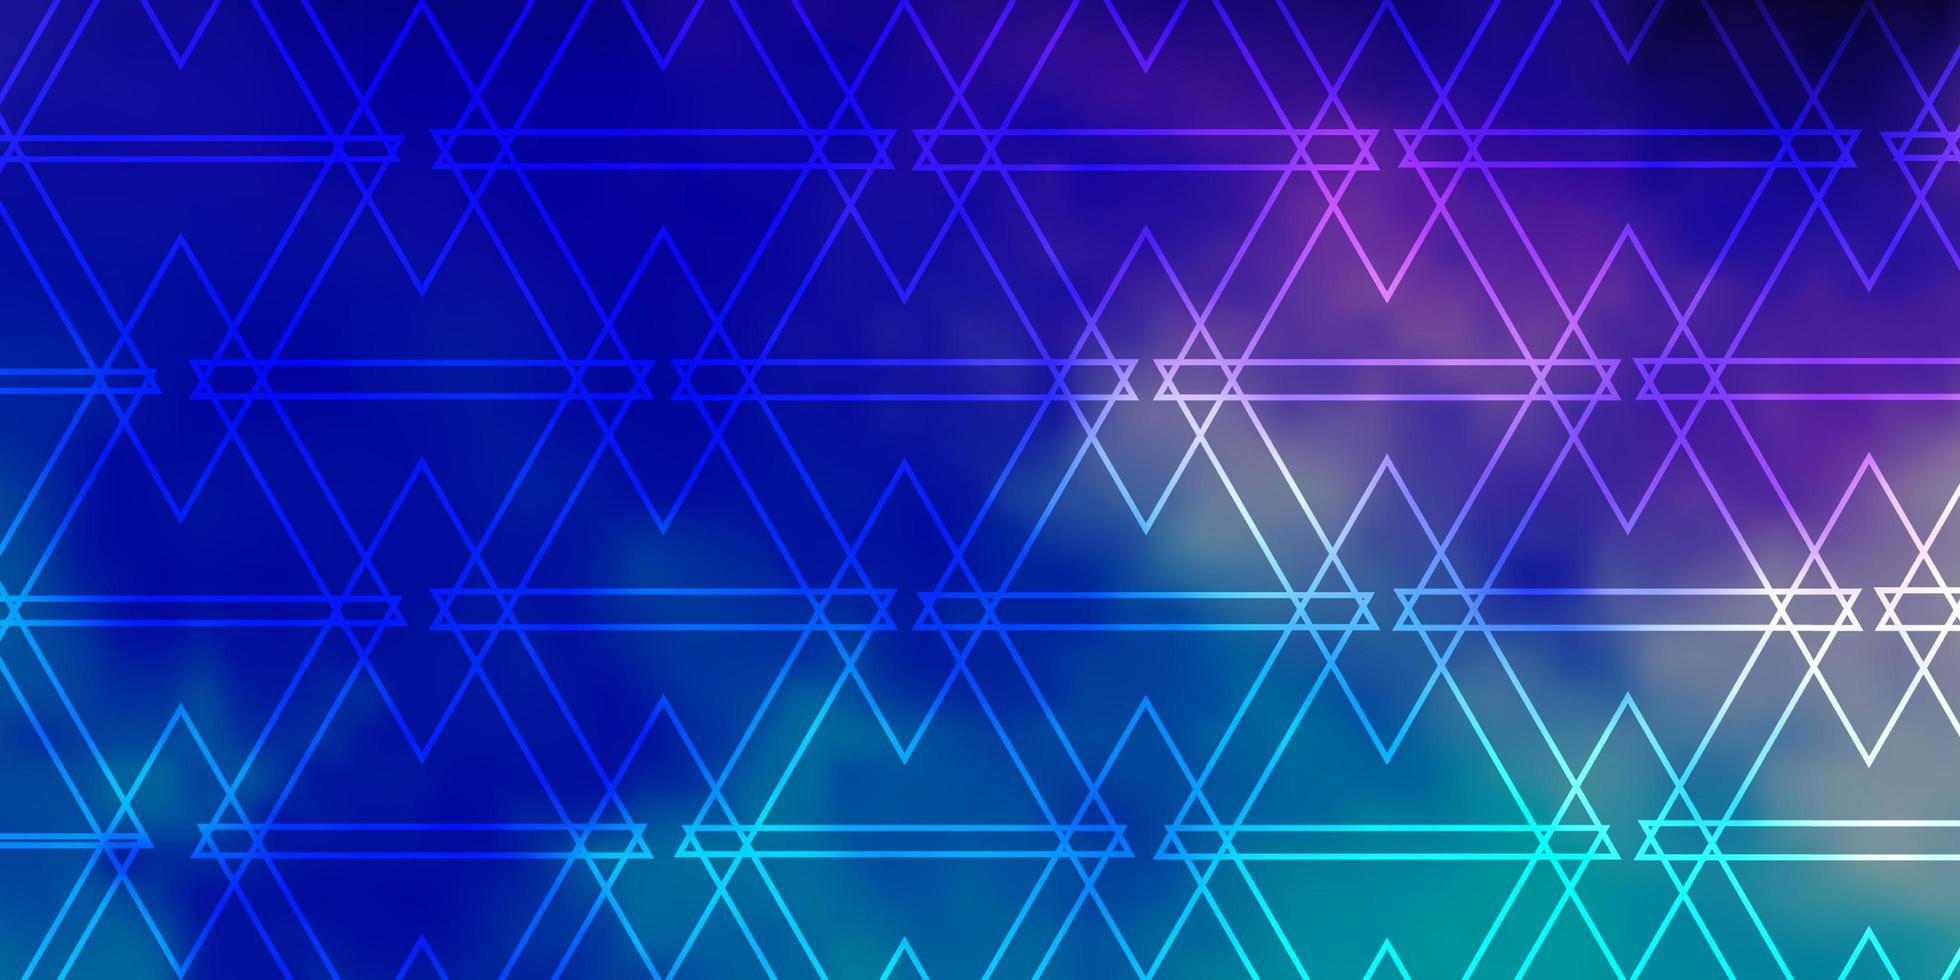 mörkrosa, blå bakgrund med linjer, trianglar. vektor